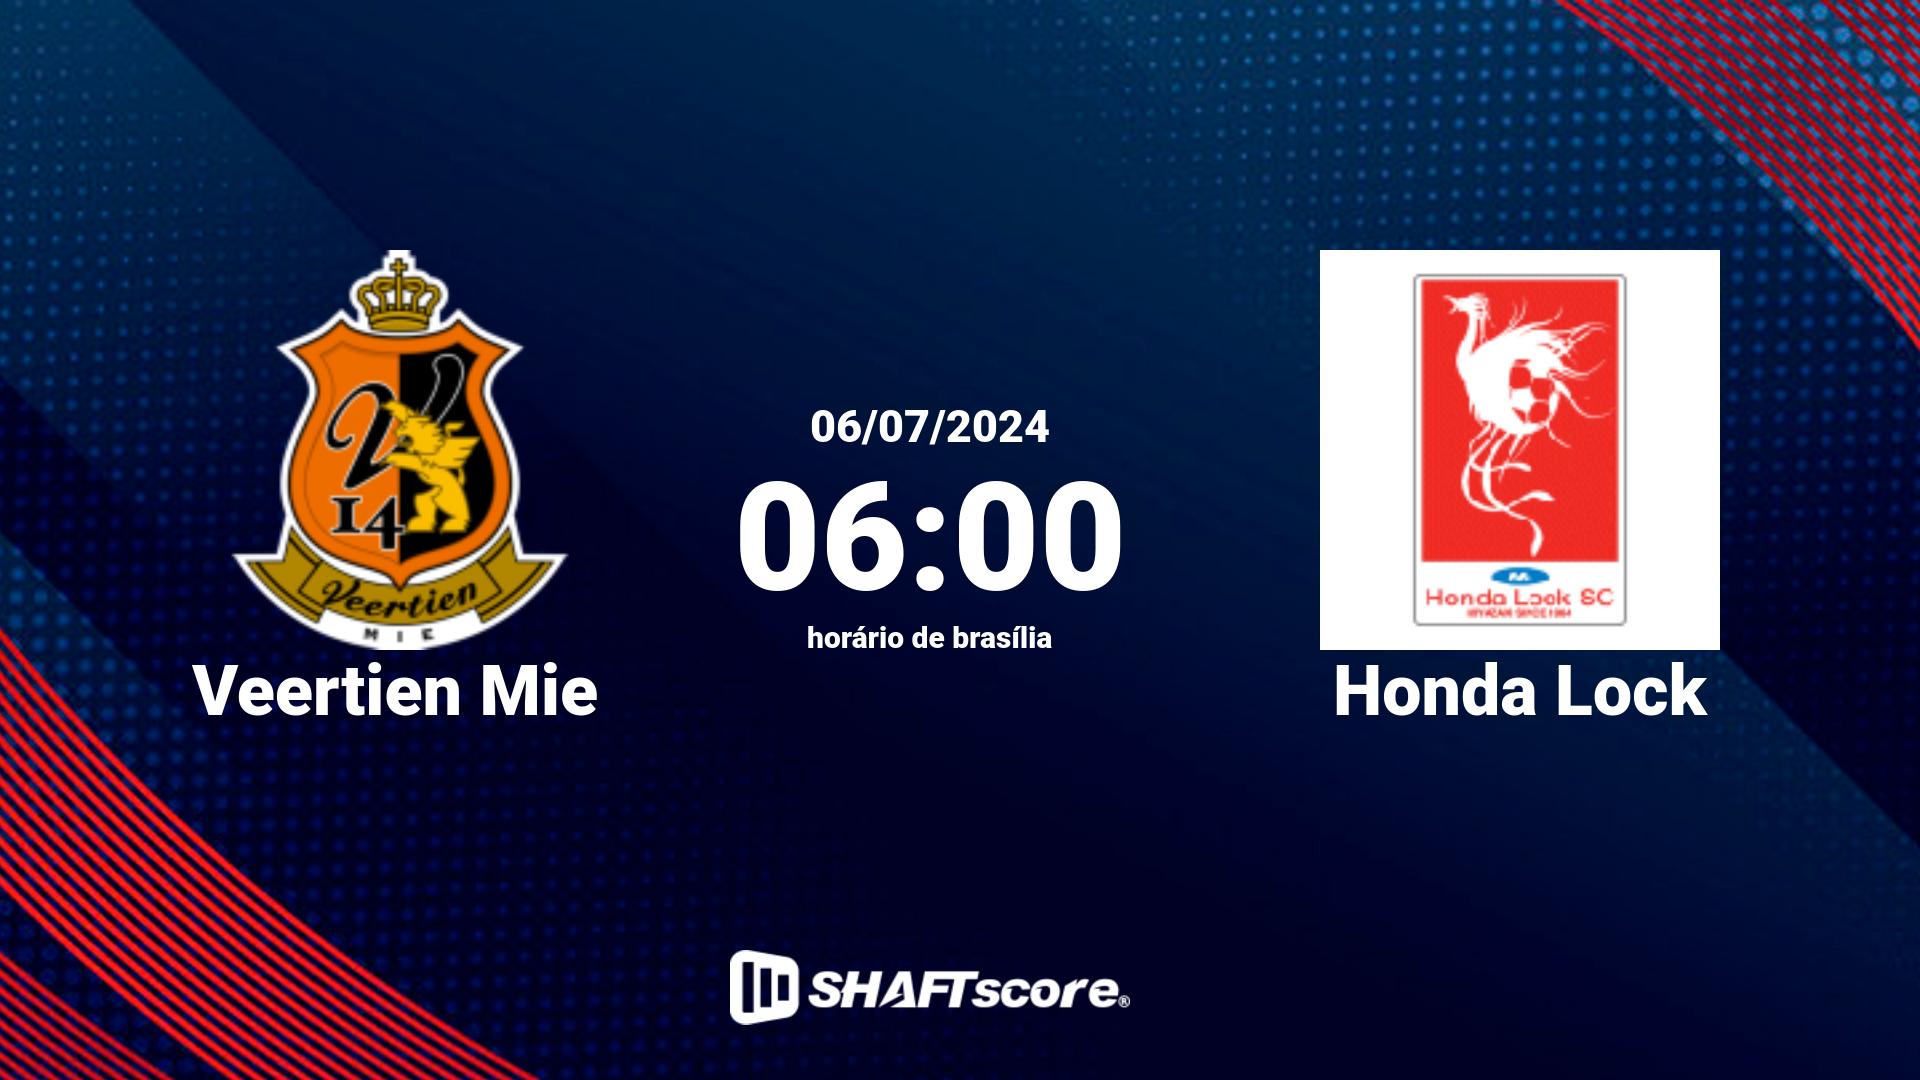 Estatísticas do jogo Veertien Mie vs Honda Lock 06.07 06:00